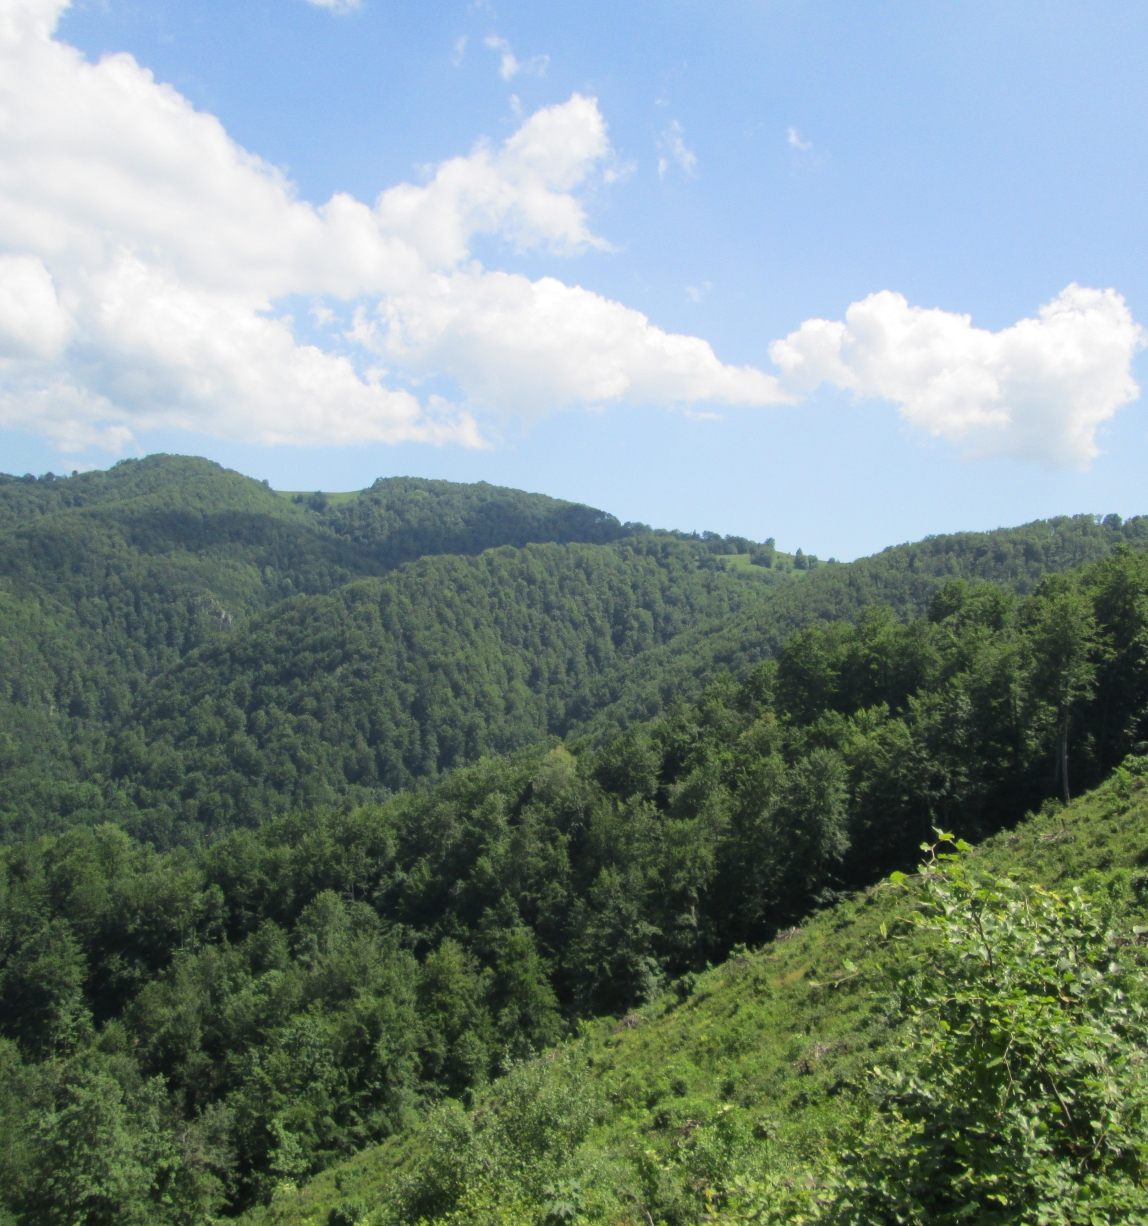 Serbian forest landscape